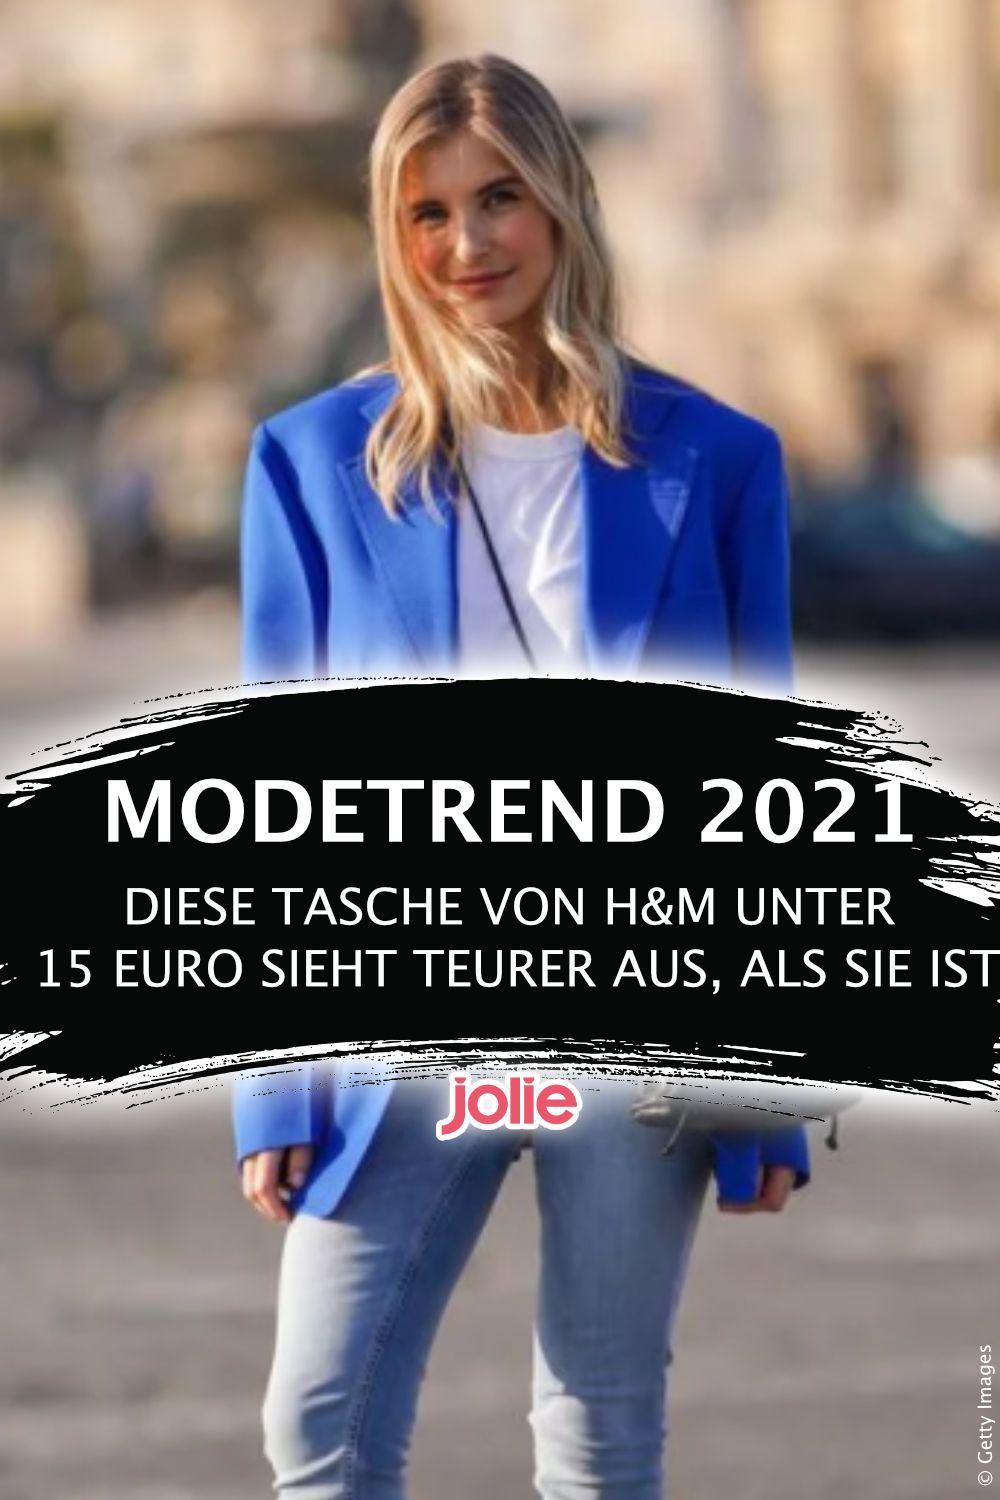 Modetrend 2021: Diese Tasche von H&M unter 15 Euro sieht teurer aus, als sie ist